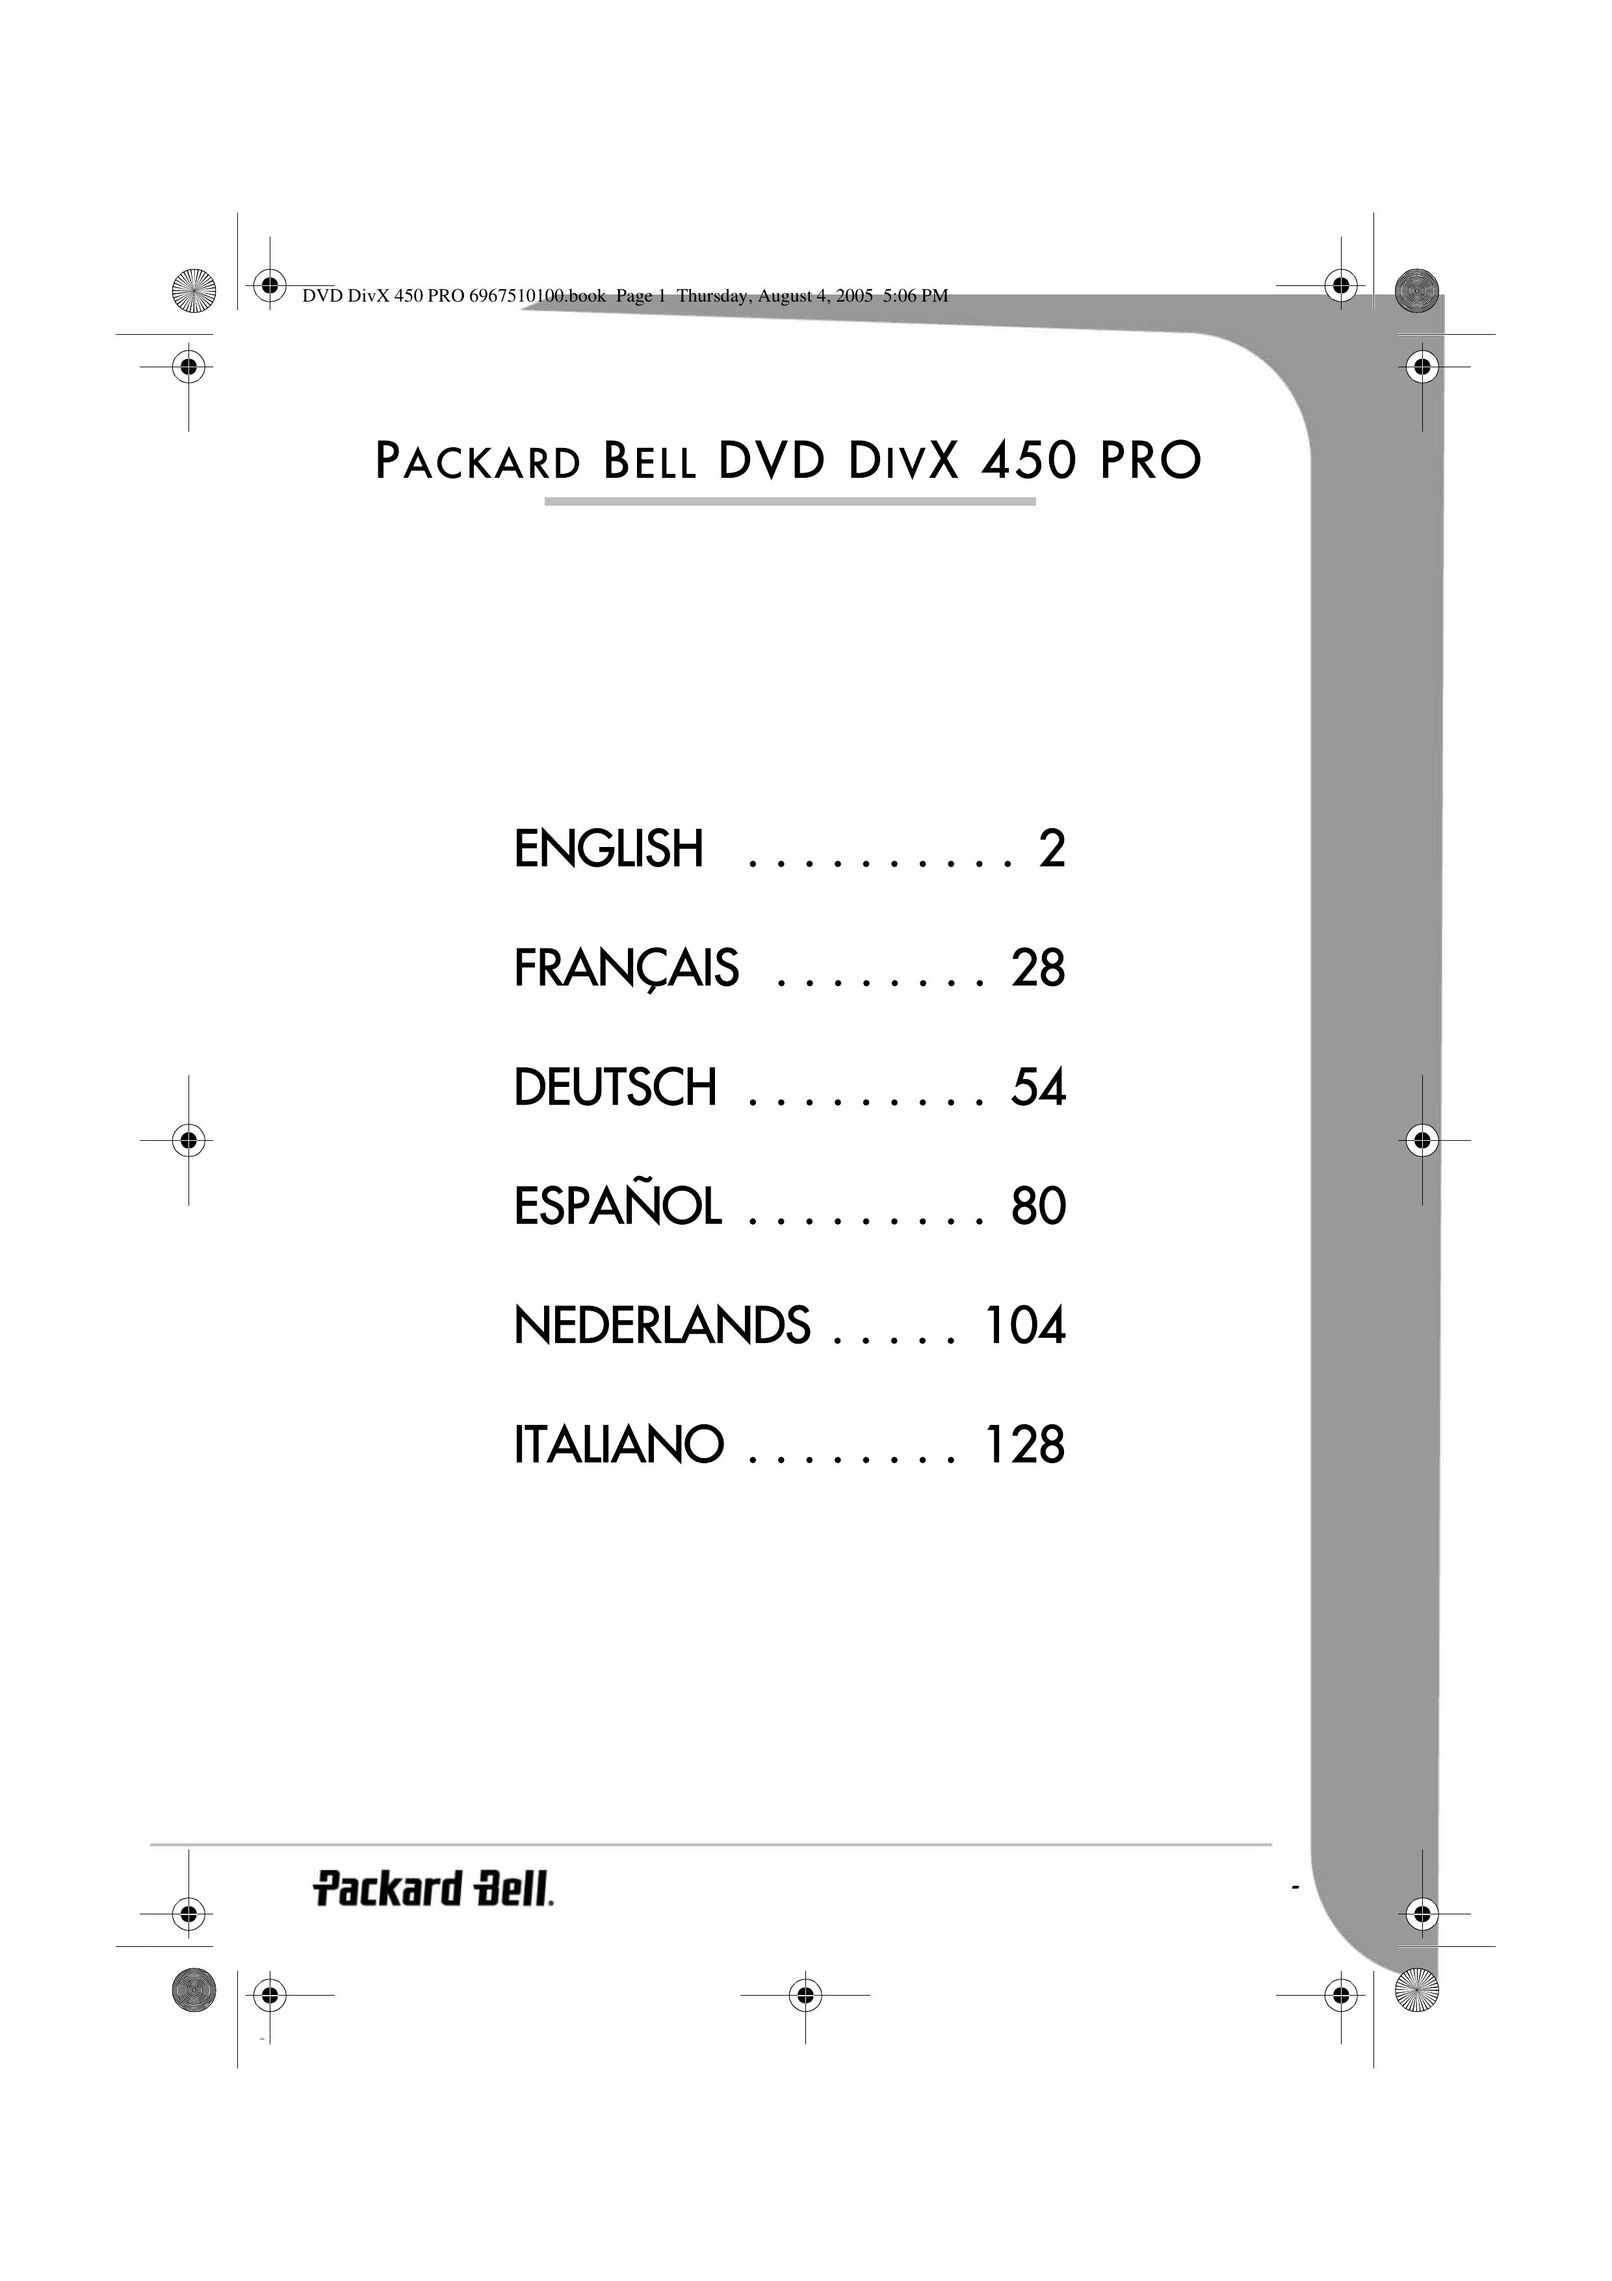 Packard Bell 450 PRO DVD Player User Manual